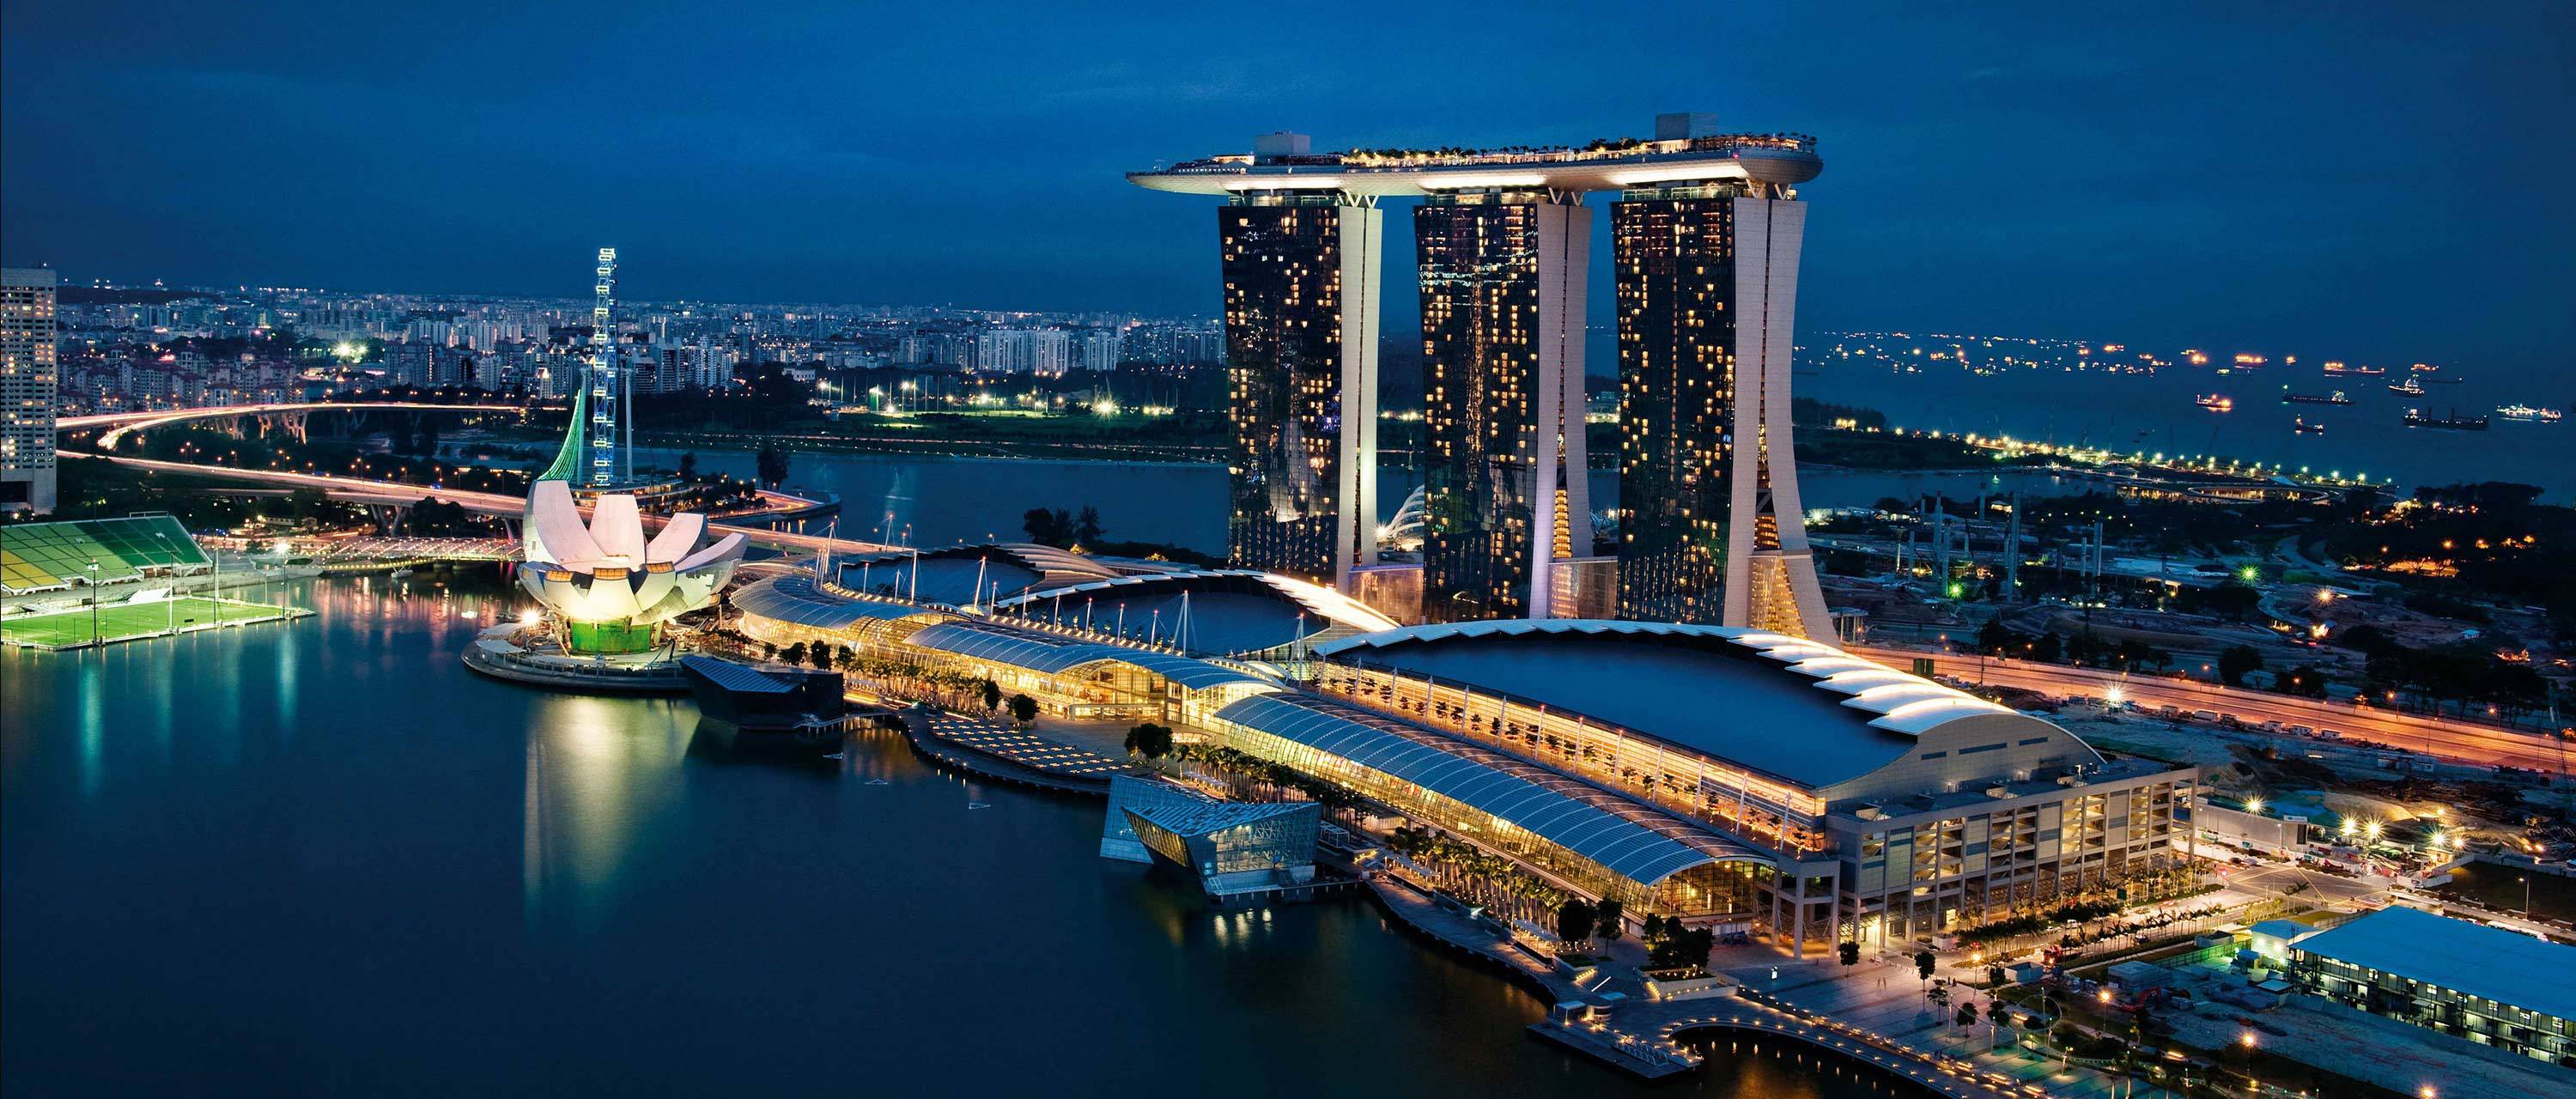 黄昏新加坡唯美风景桌面壁纸-壁纸图片大全